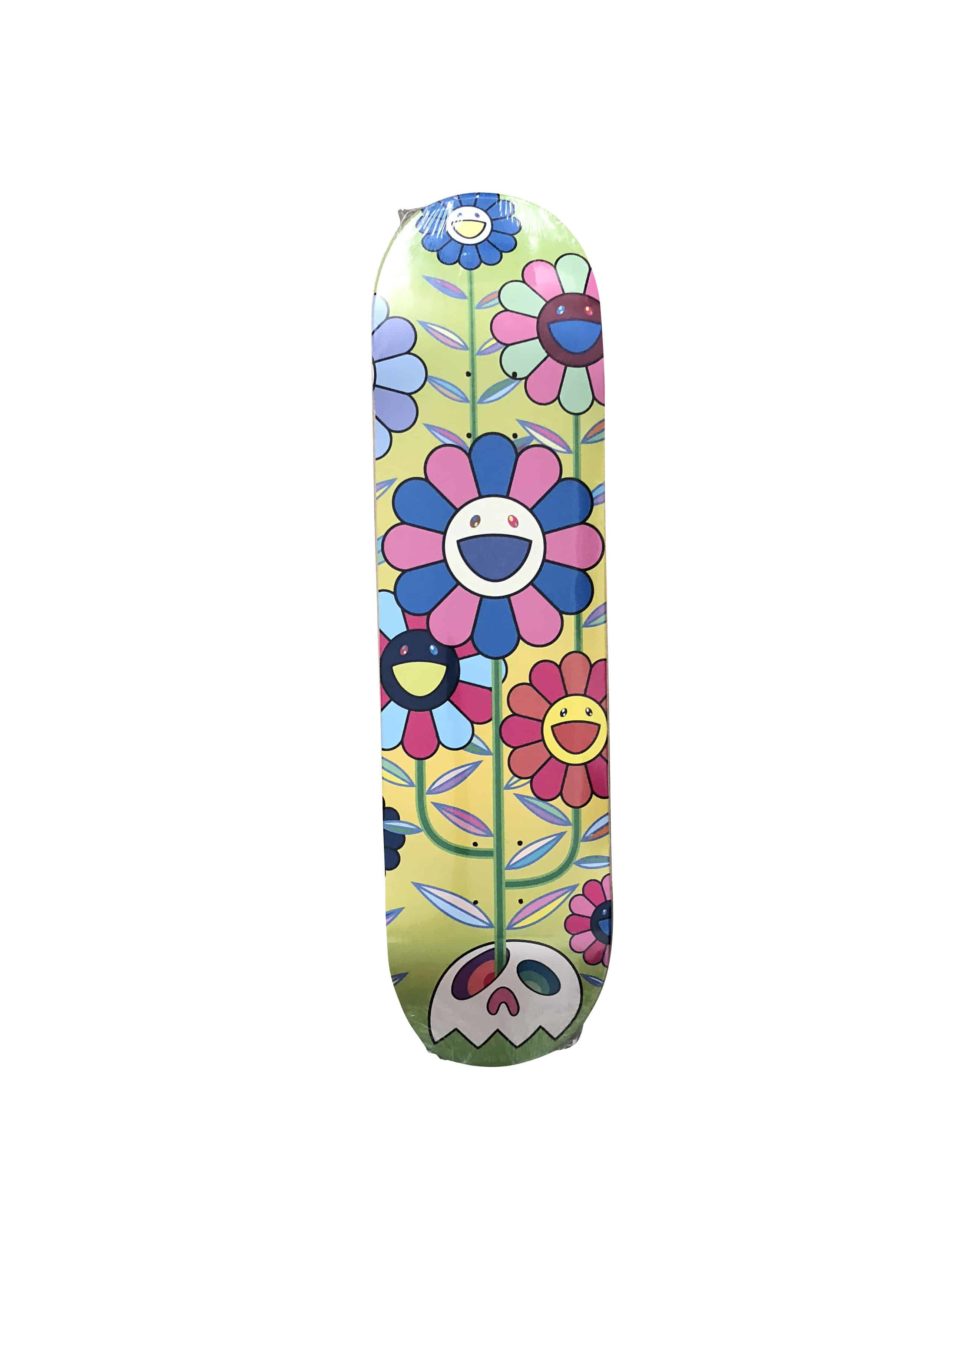 Takashi Murakami x ComplexCon Flower Cluster Eden Skateboard Skate Deck- Baer & Bosch Auctioneers